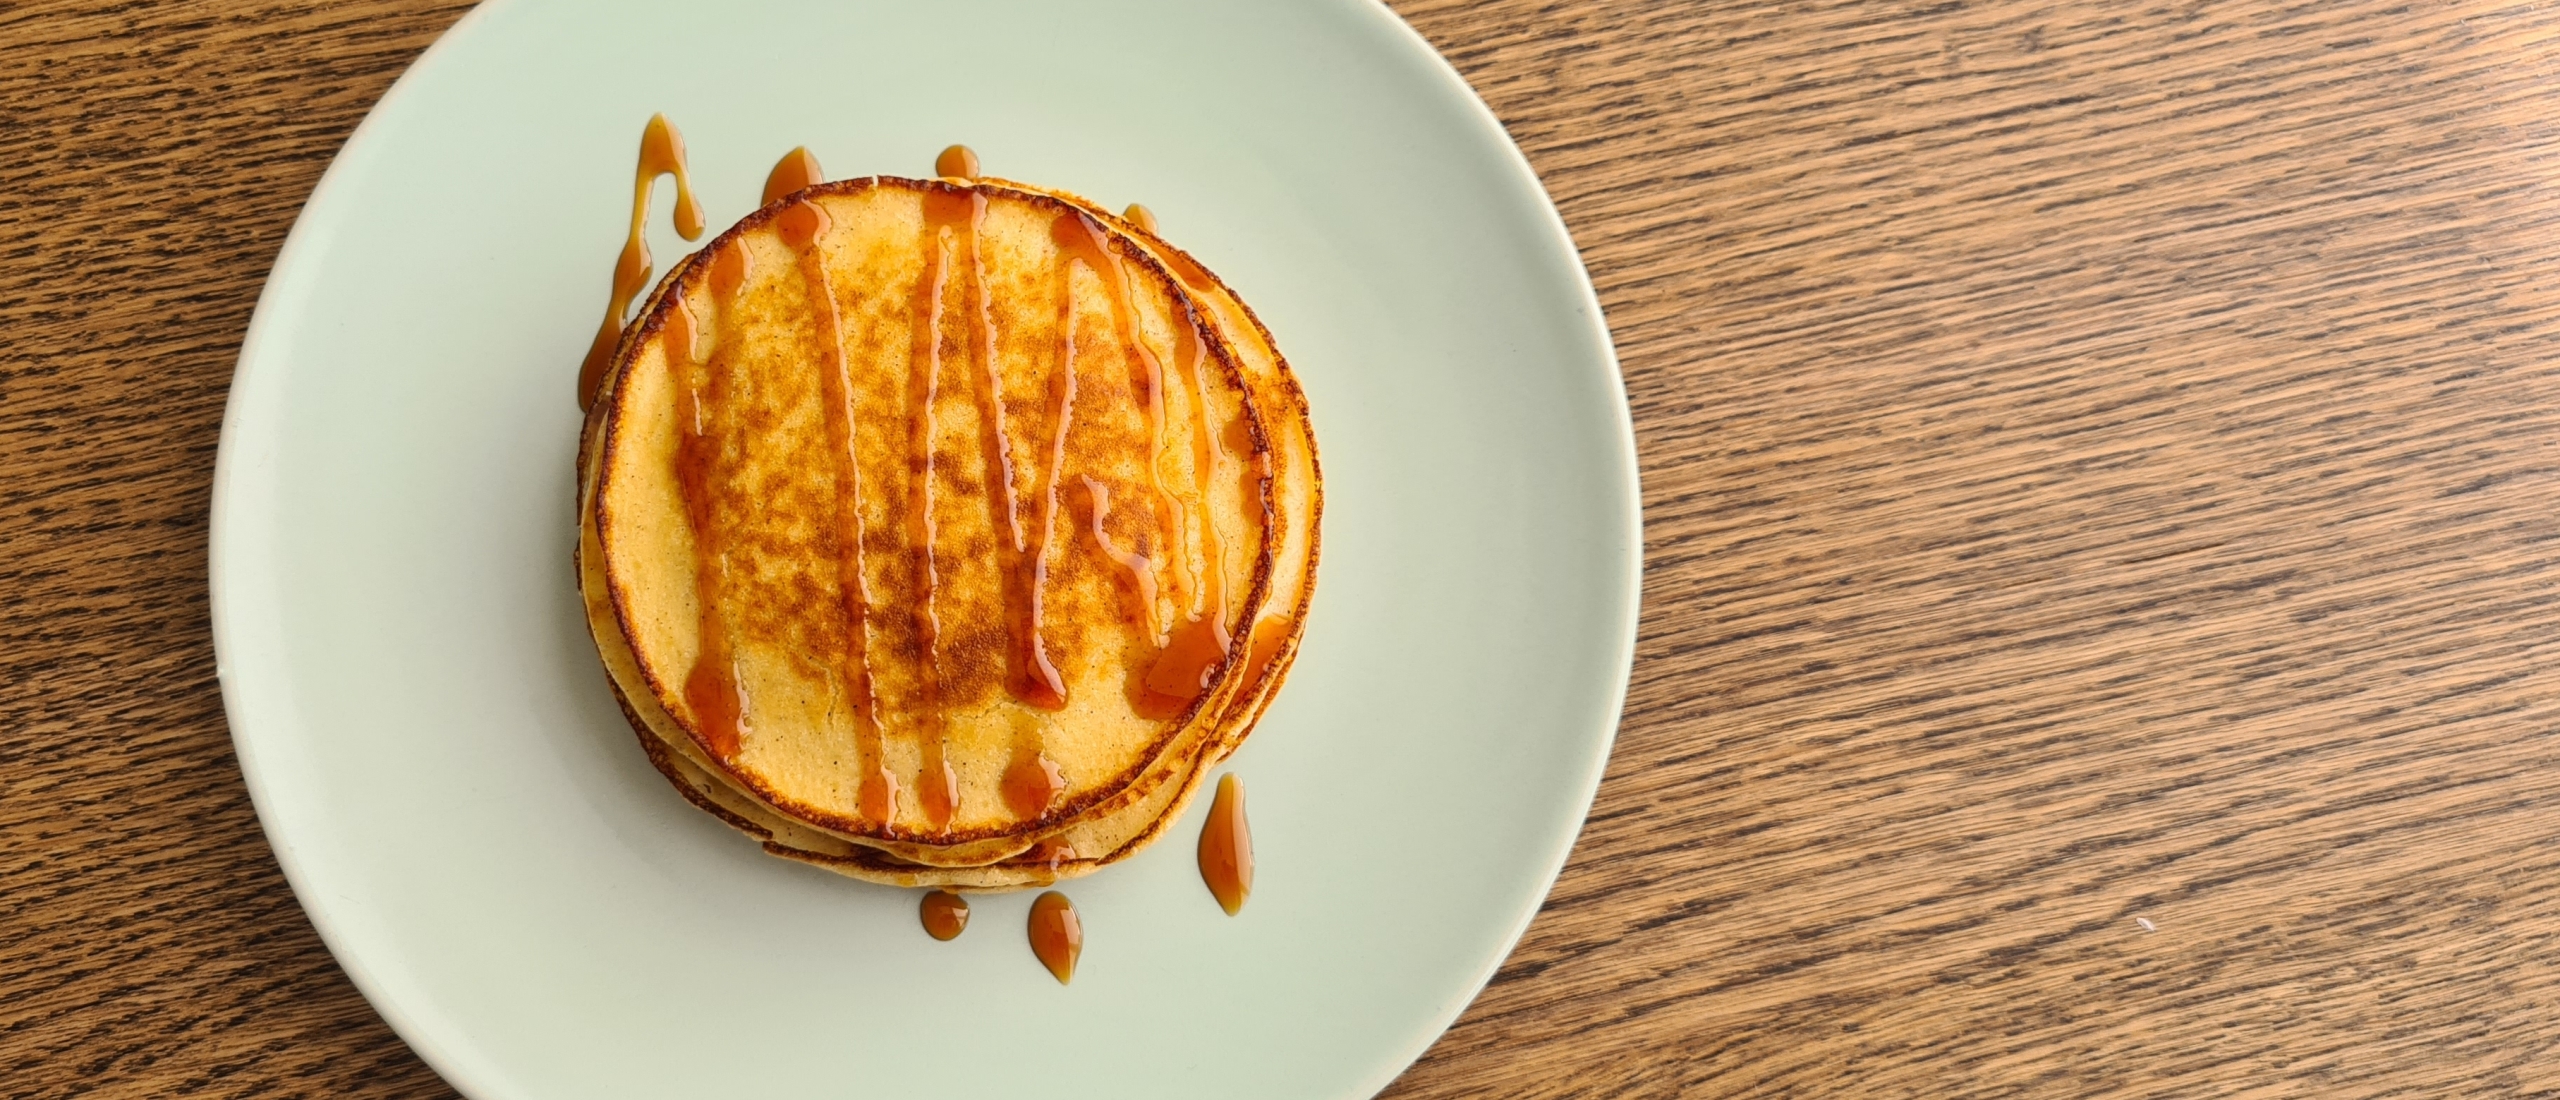 recept kwark pancakes met kaneel - ik wil aankomen - ondergewicht ondervoeding